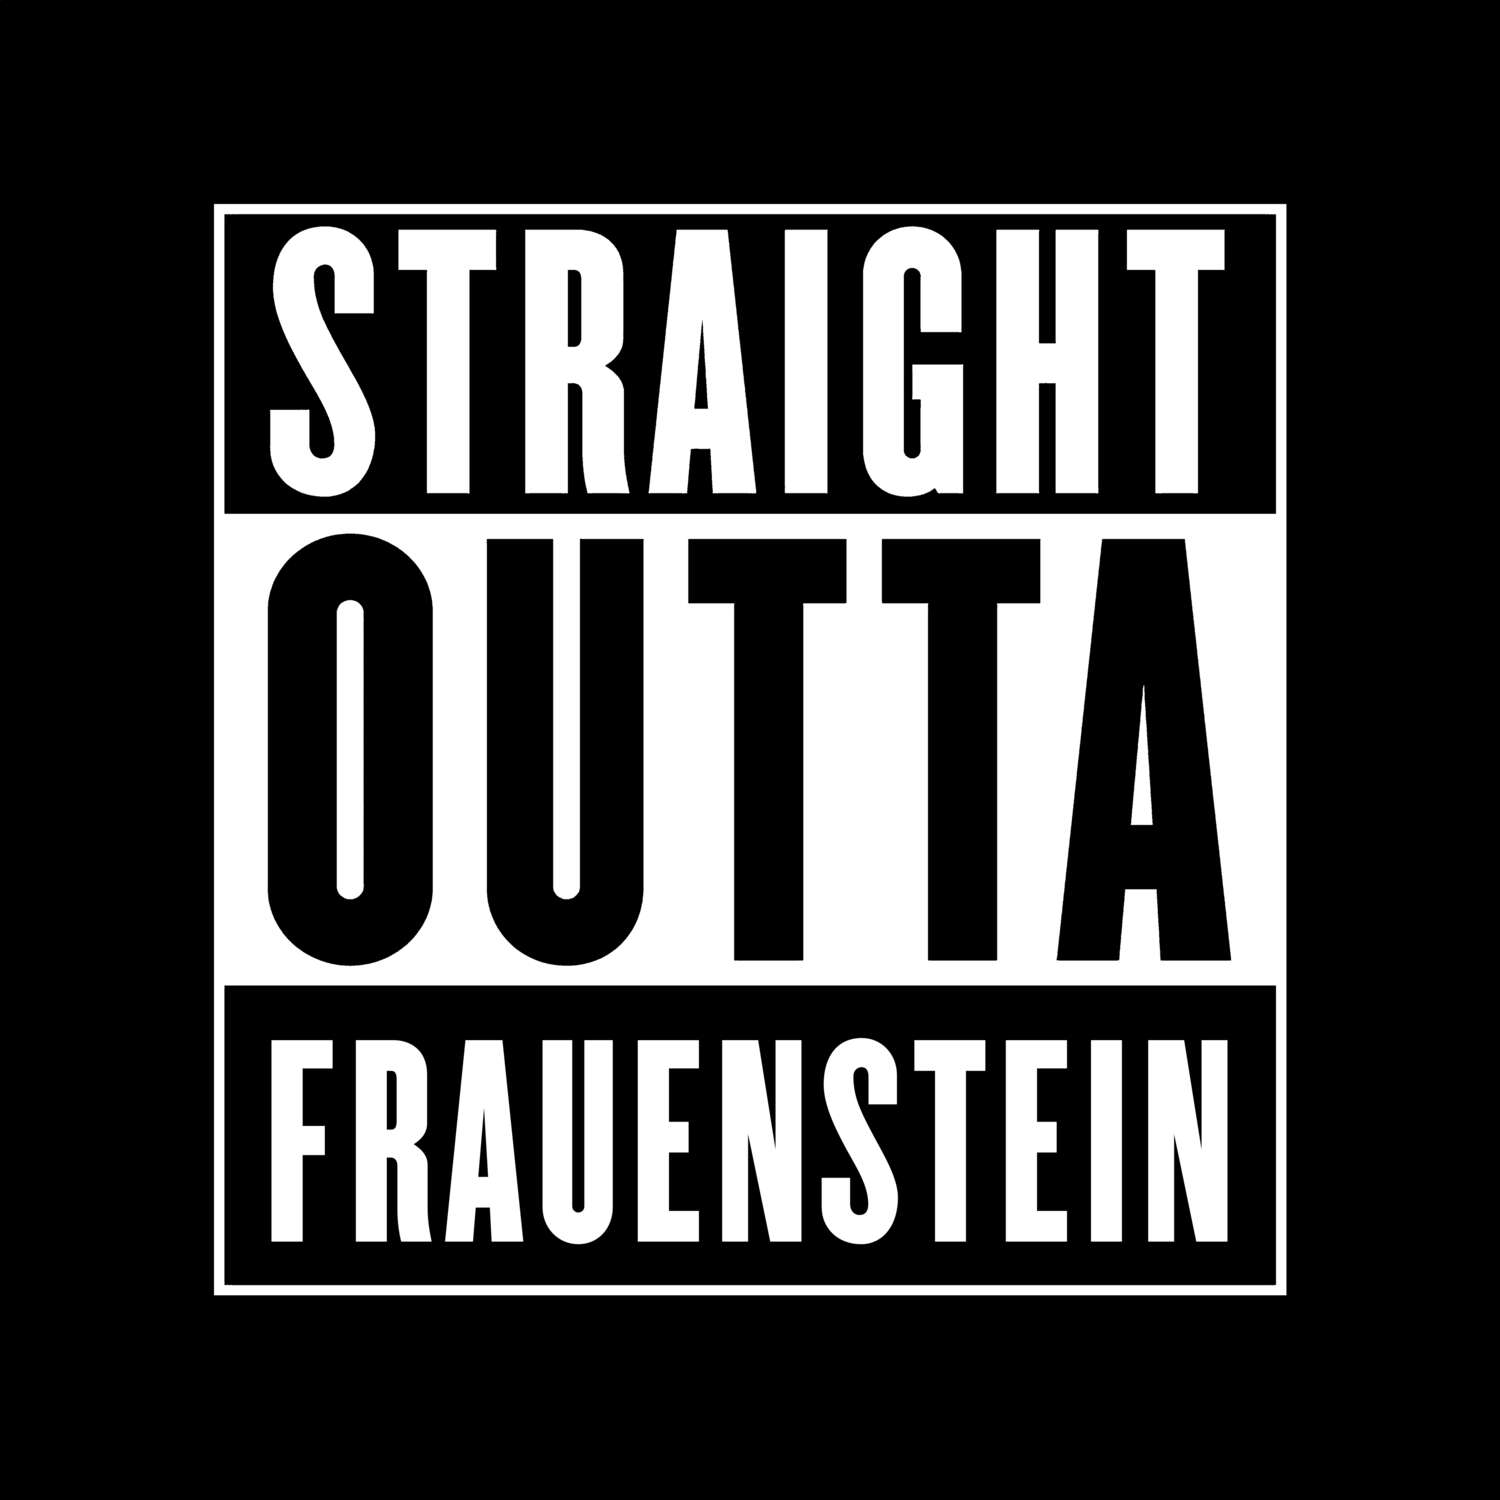 Frauenstein T-Shirt »Straight Outta«